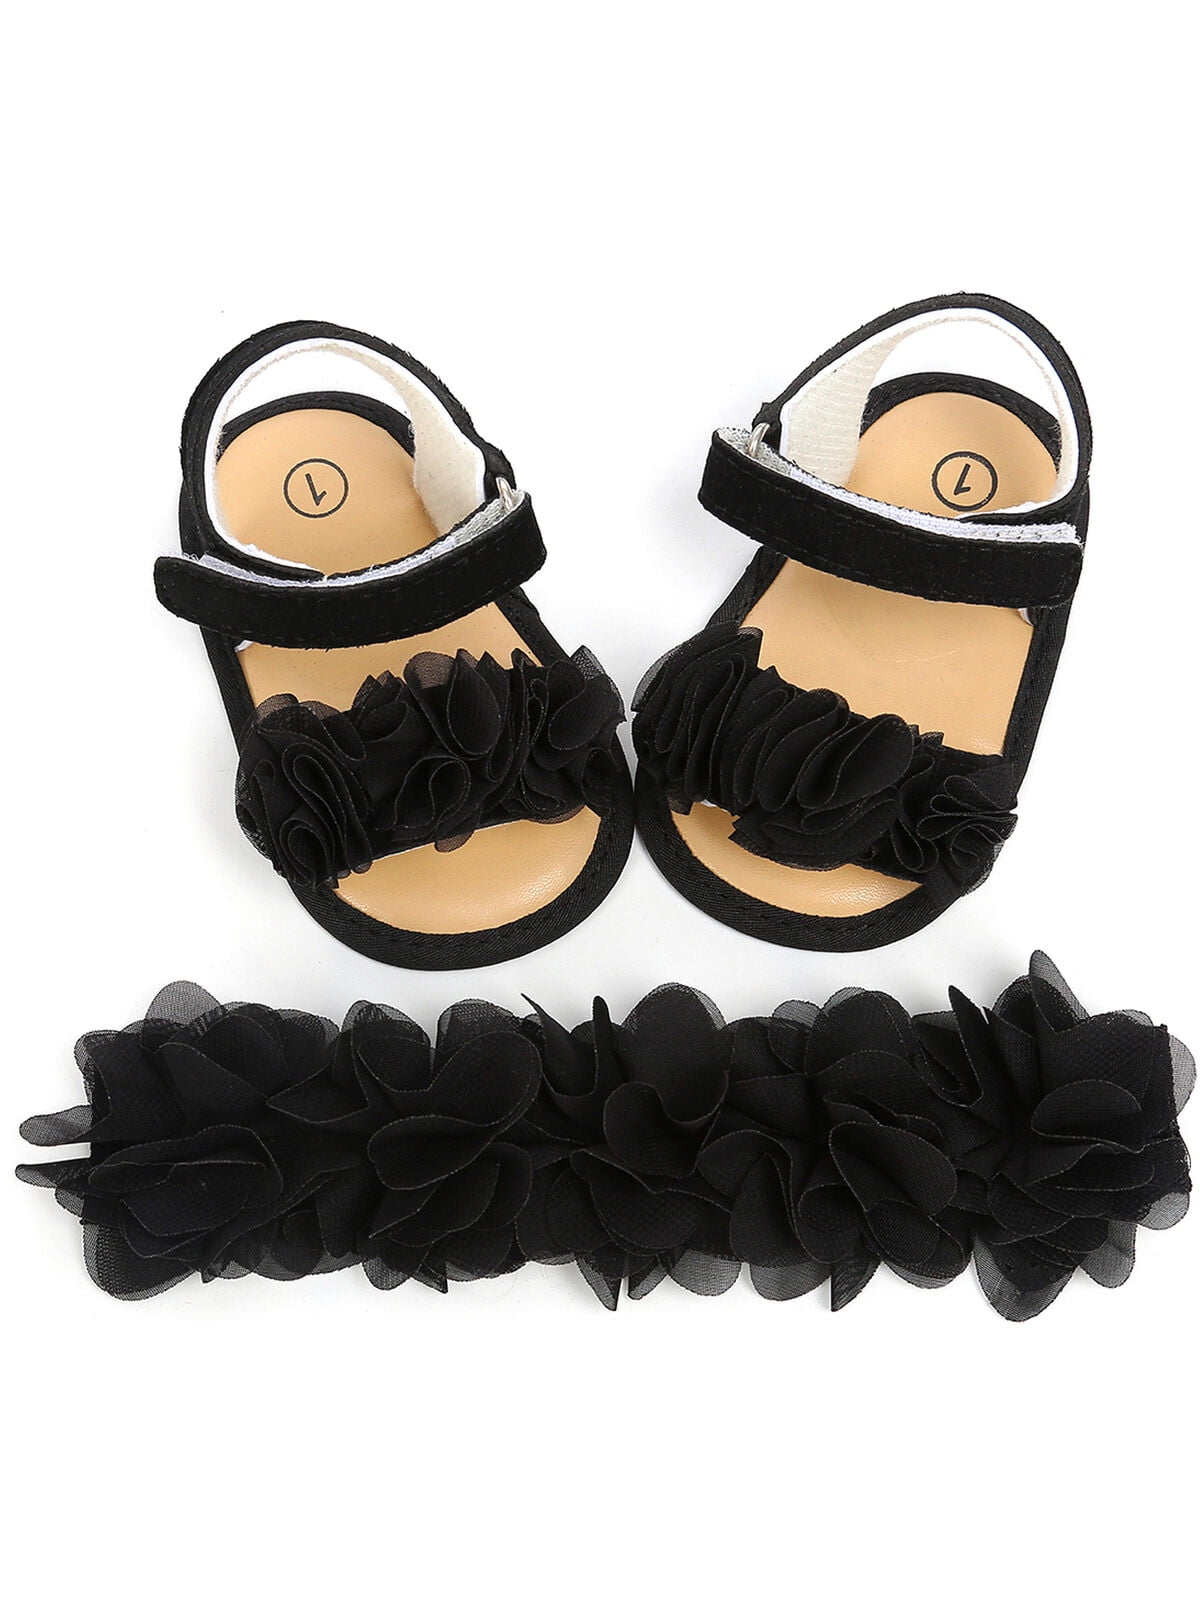 Baby Shoes Toddler Girl Infant Anti Slip Summer Soft Sole Prewalker Kids Sandals 